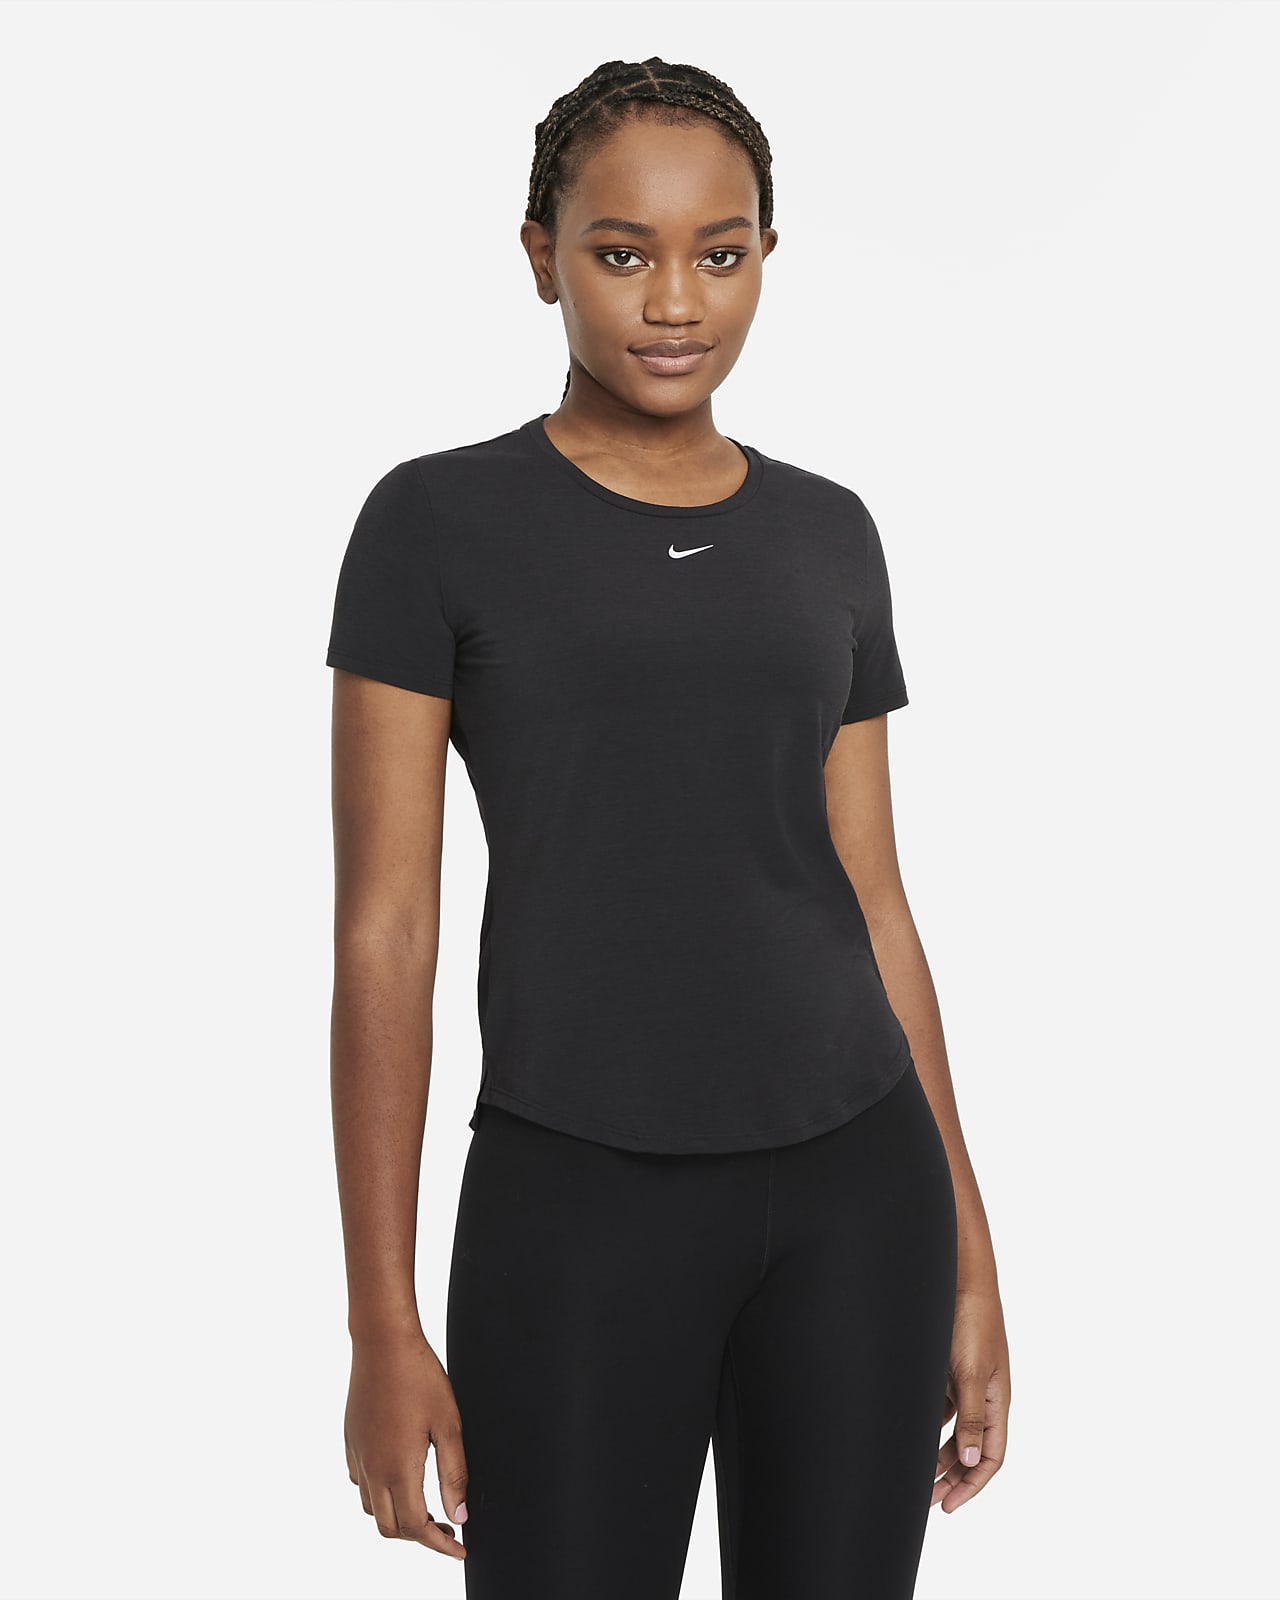 Playera de manga corta y ajuste estándar para mujer Nike Dri-FIT UV One Luxe